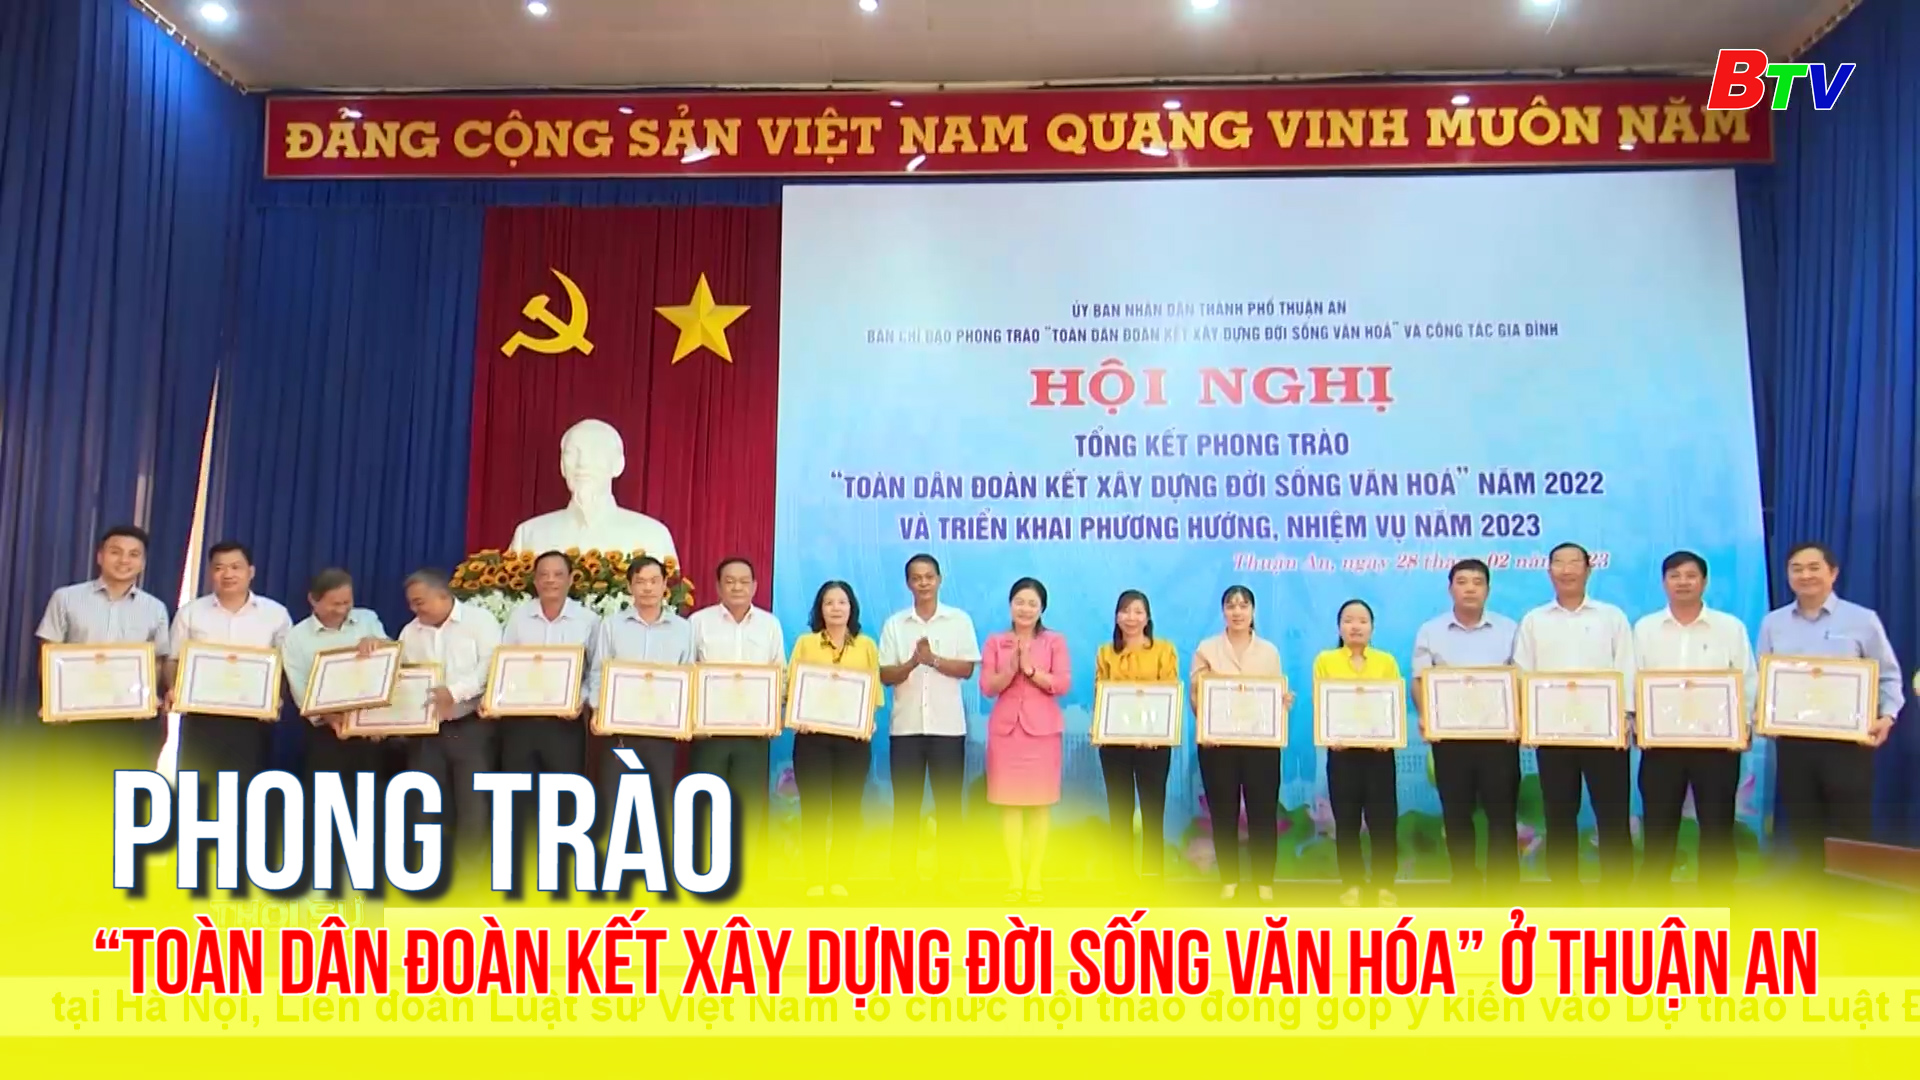 Phong trào “Toàn dân đoàn kết xây dựng đời sống văn hóa” ở Thuận An